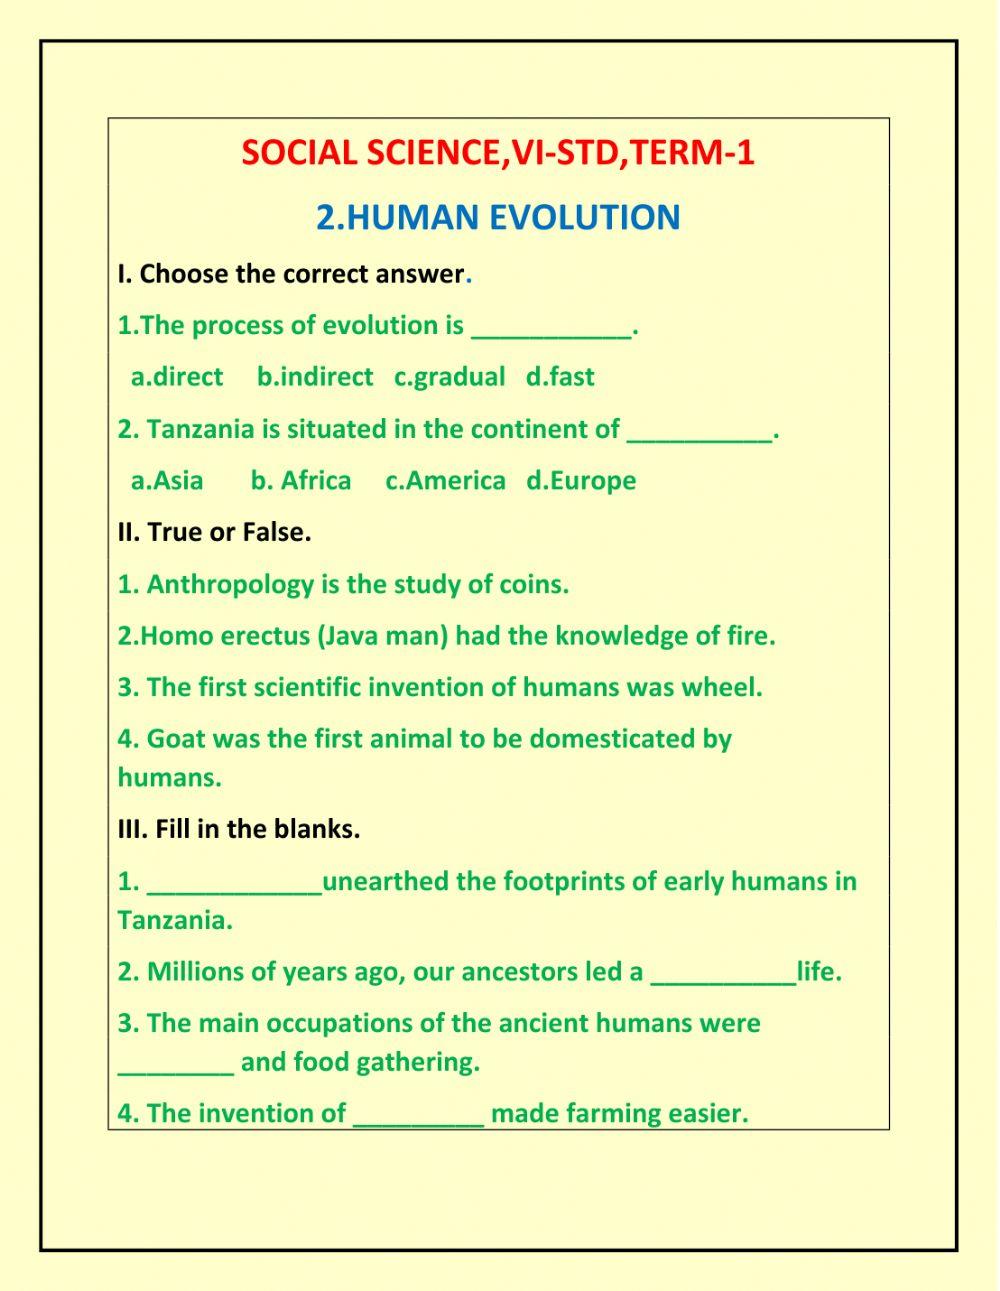 VI-STD,TEERM-1,Human Evolution